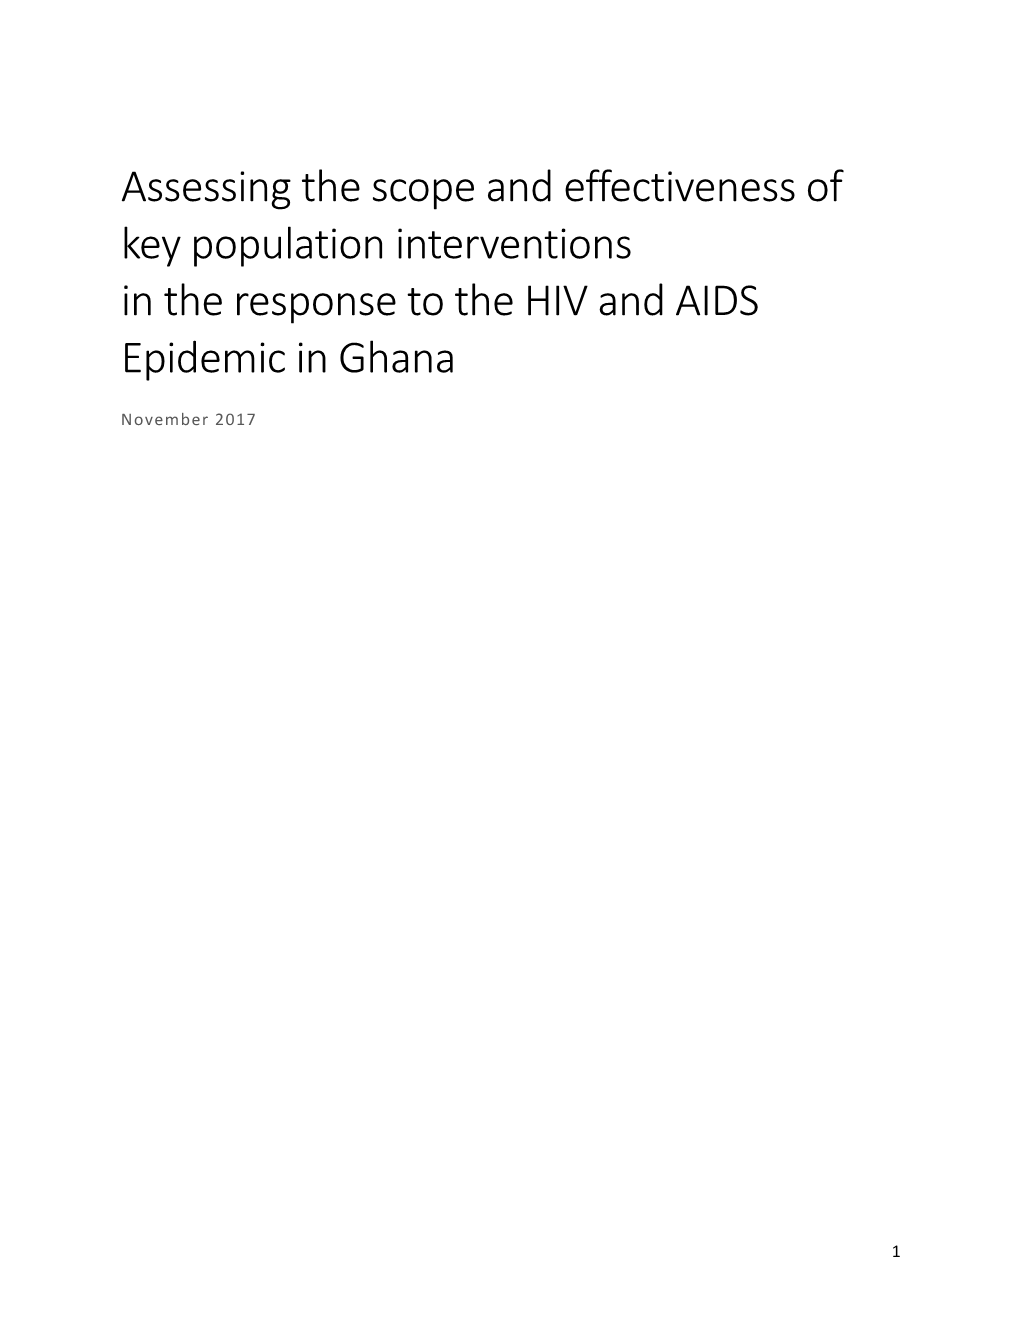 Ghana KP Assessment Final6thnov2017